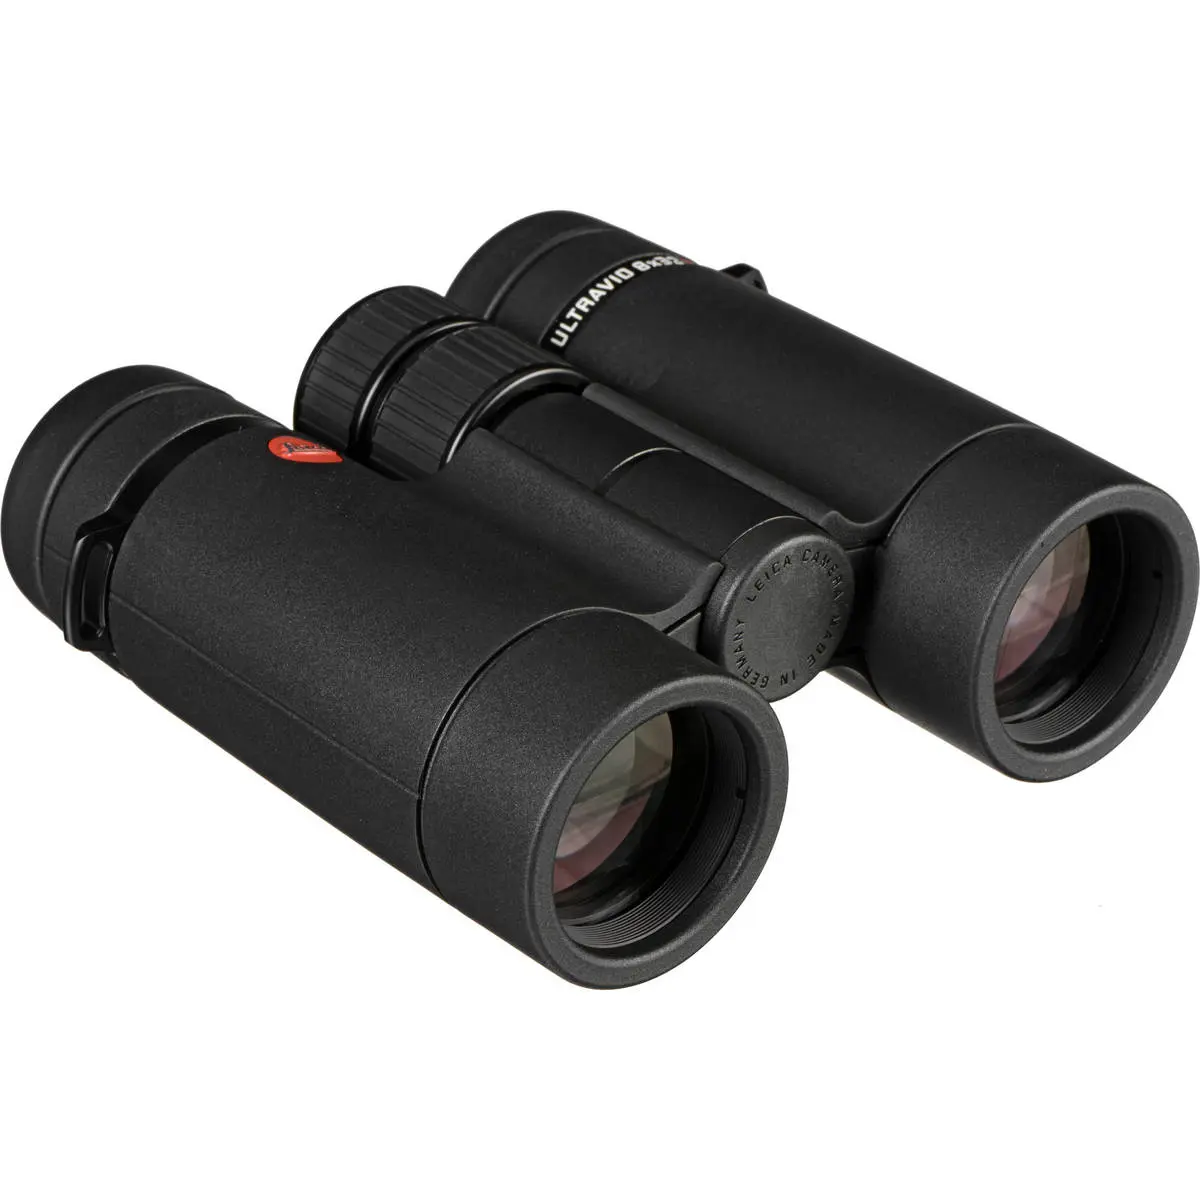 1. Leica 40090 ULTRAVID 8x32 HD-Plus Binoculars